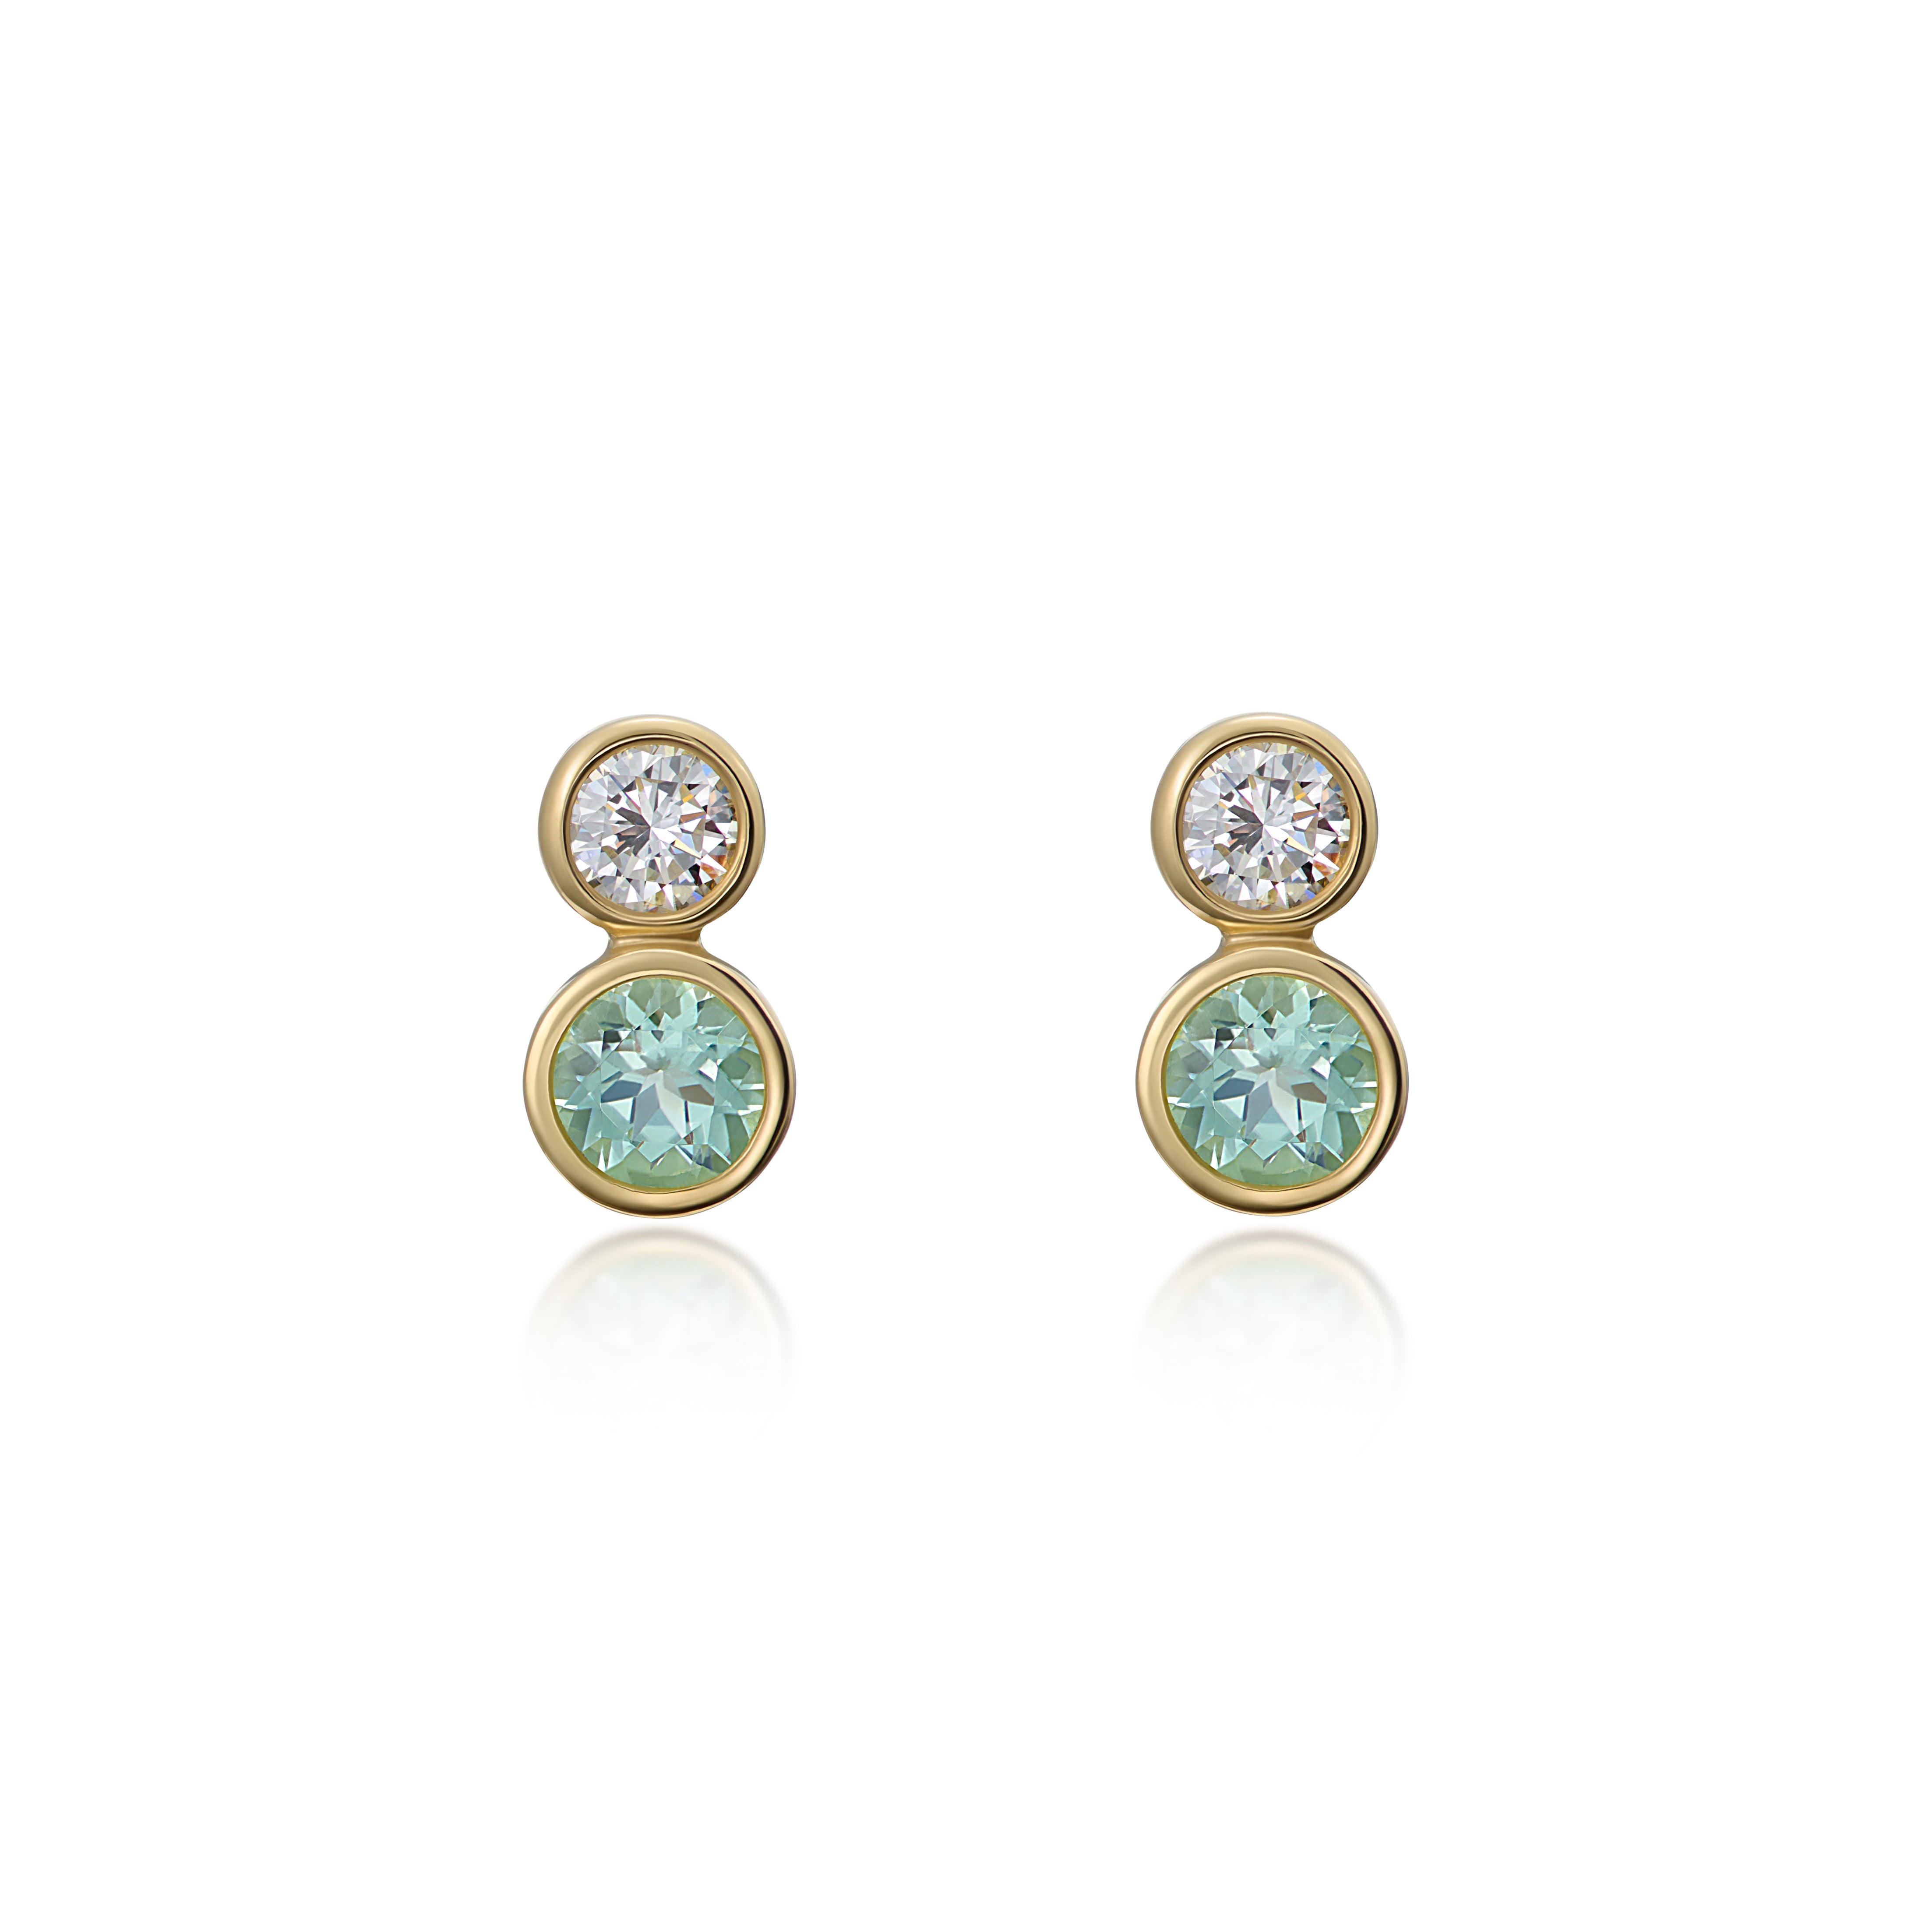 Atlantis: Diamond and Tourmaline Stud Earrings